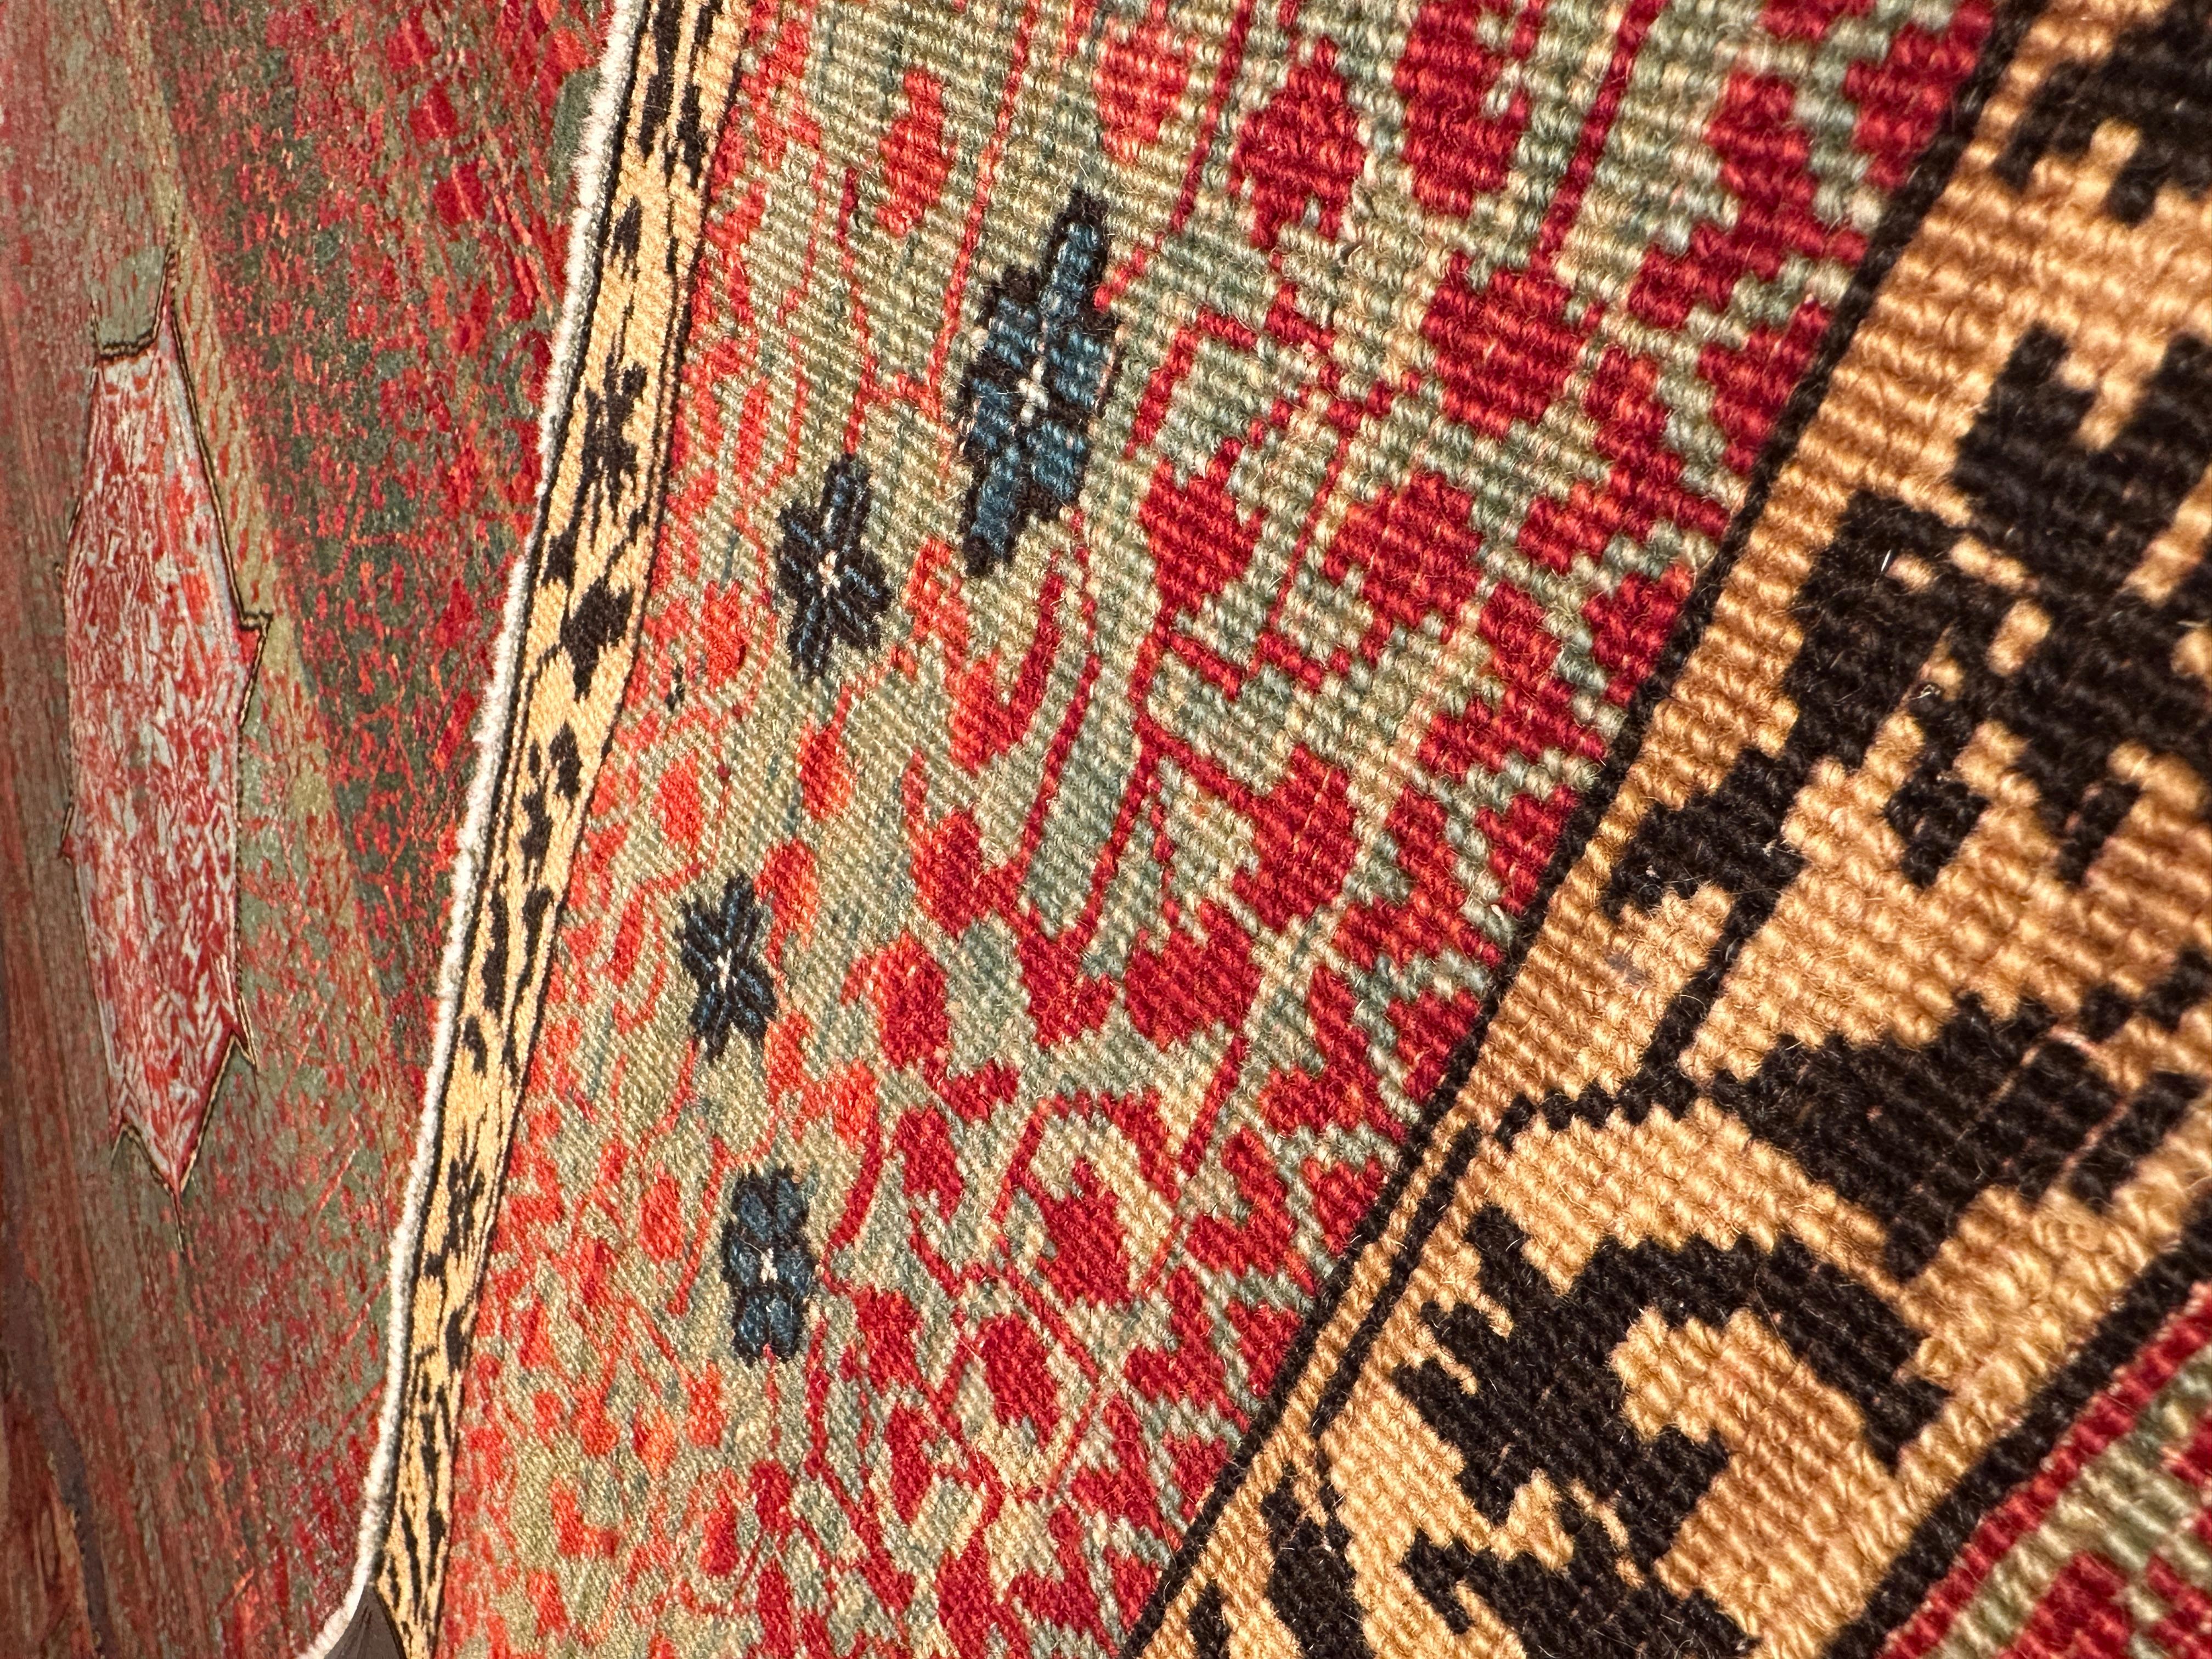 Die Quelle des Teppichs stammt aus dem Buch Völker, Angela, Die orientalischen Knüpfteppiche des MAK, Wien: Böhlau, 2001: 42-5. Dieser Teppich mit dem zentralen Stern wurde im frühen 16. Jahrhundert von Mamluken-Sultanen in Kairo, Ägypten,